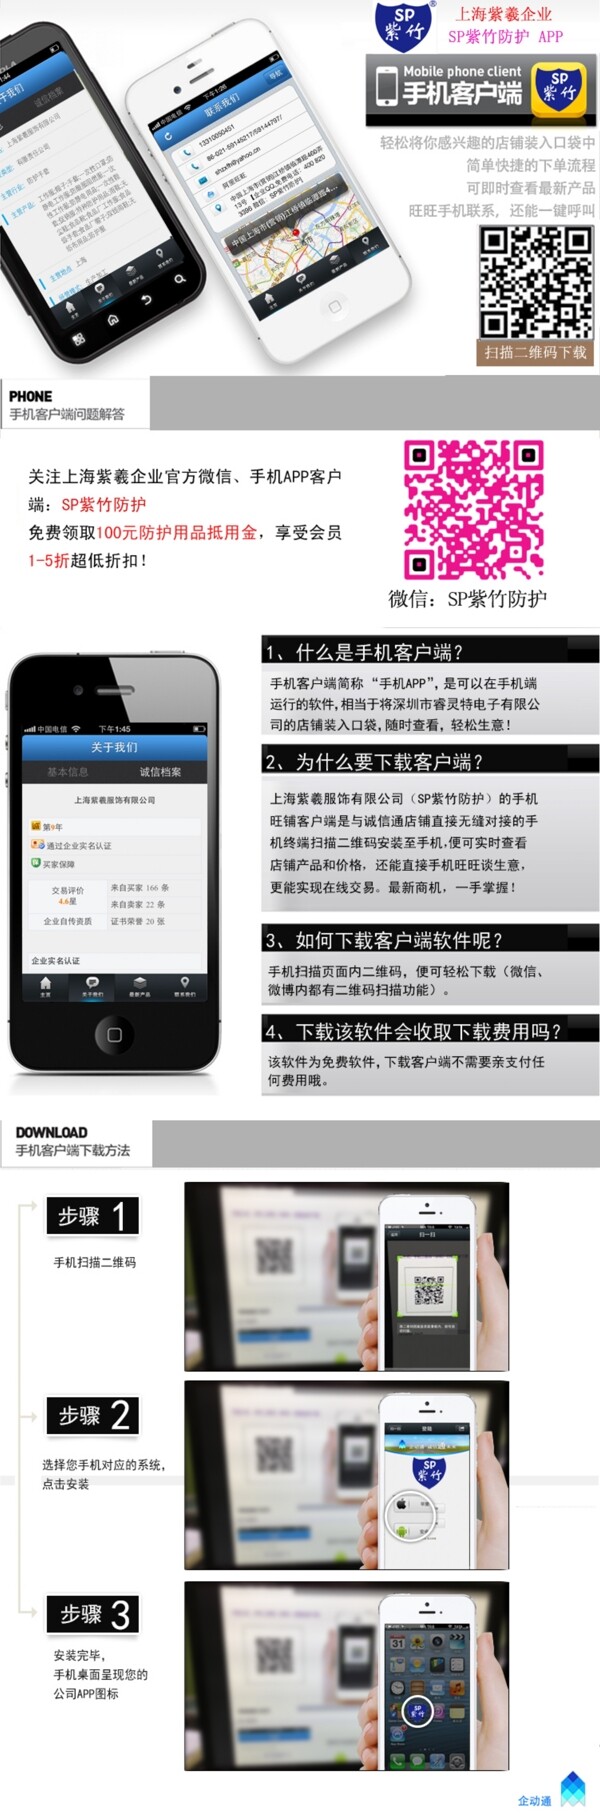 上海紫羲企业app图片